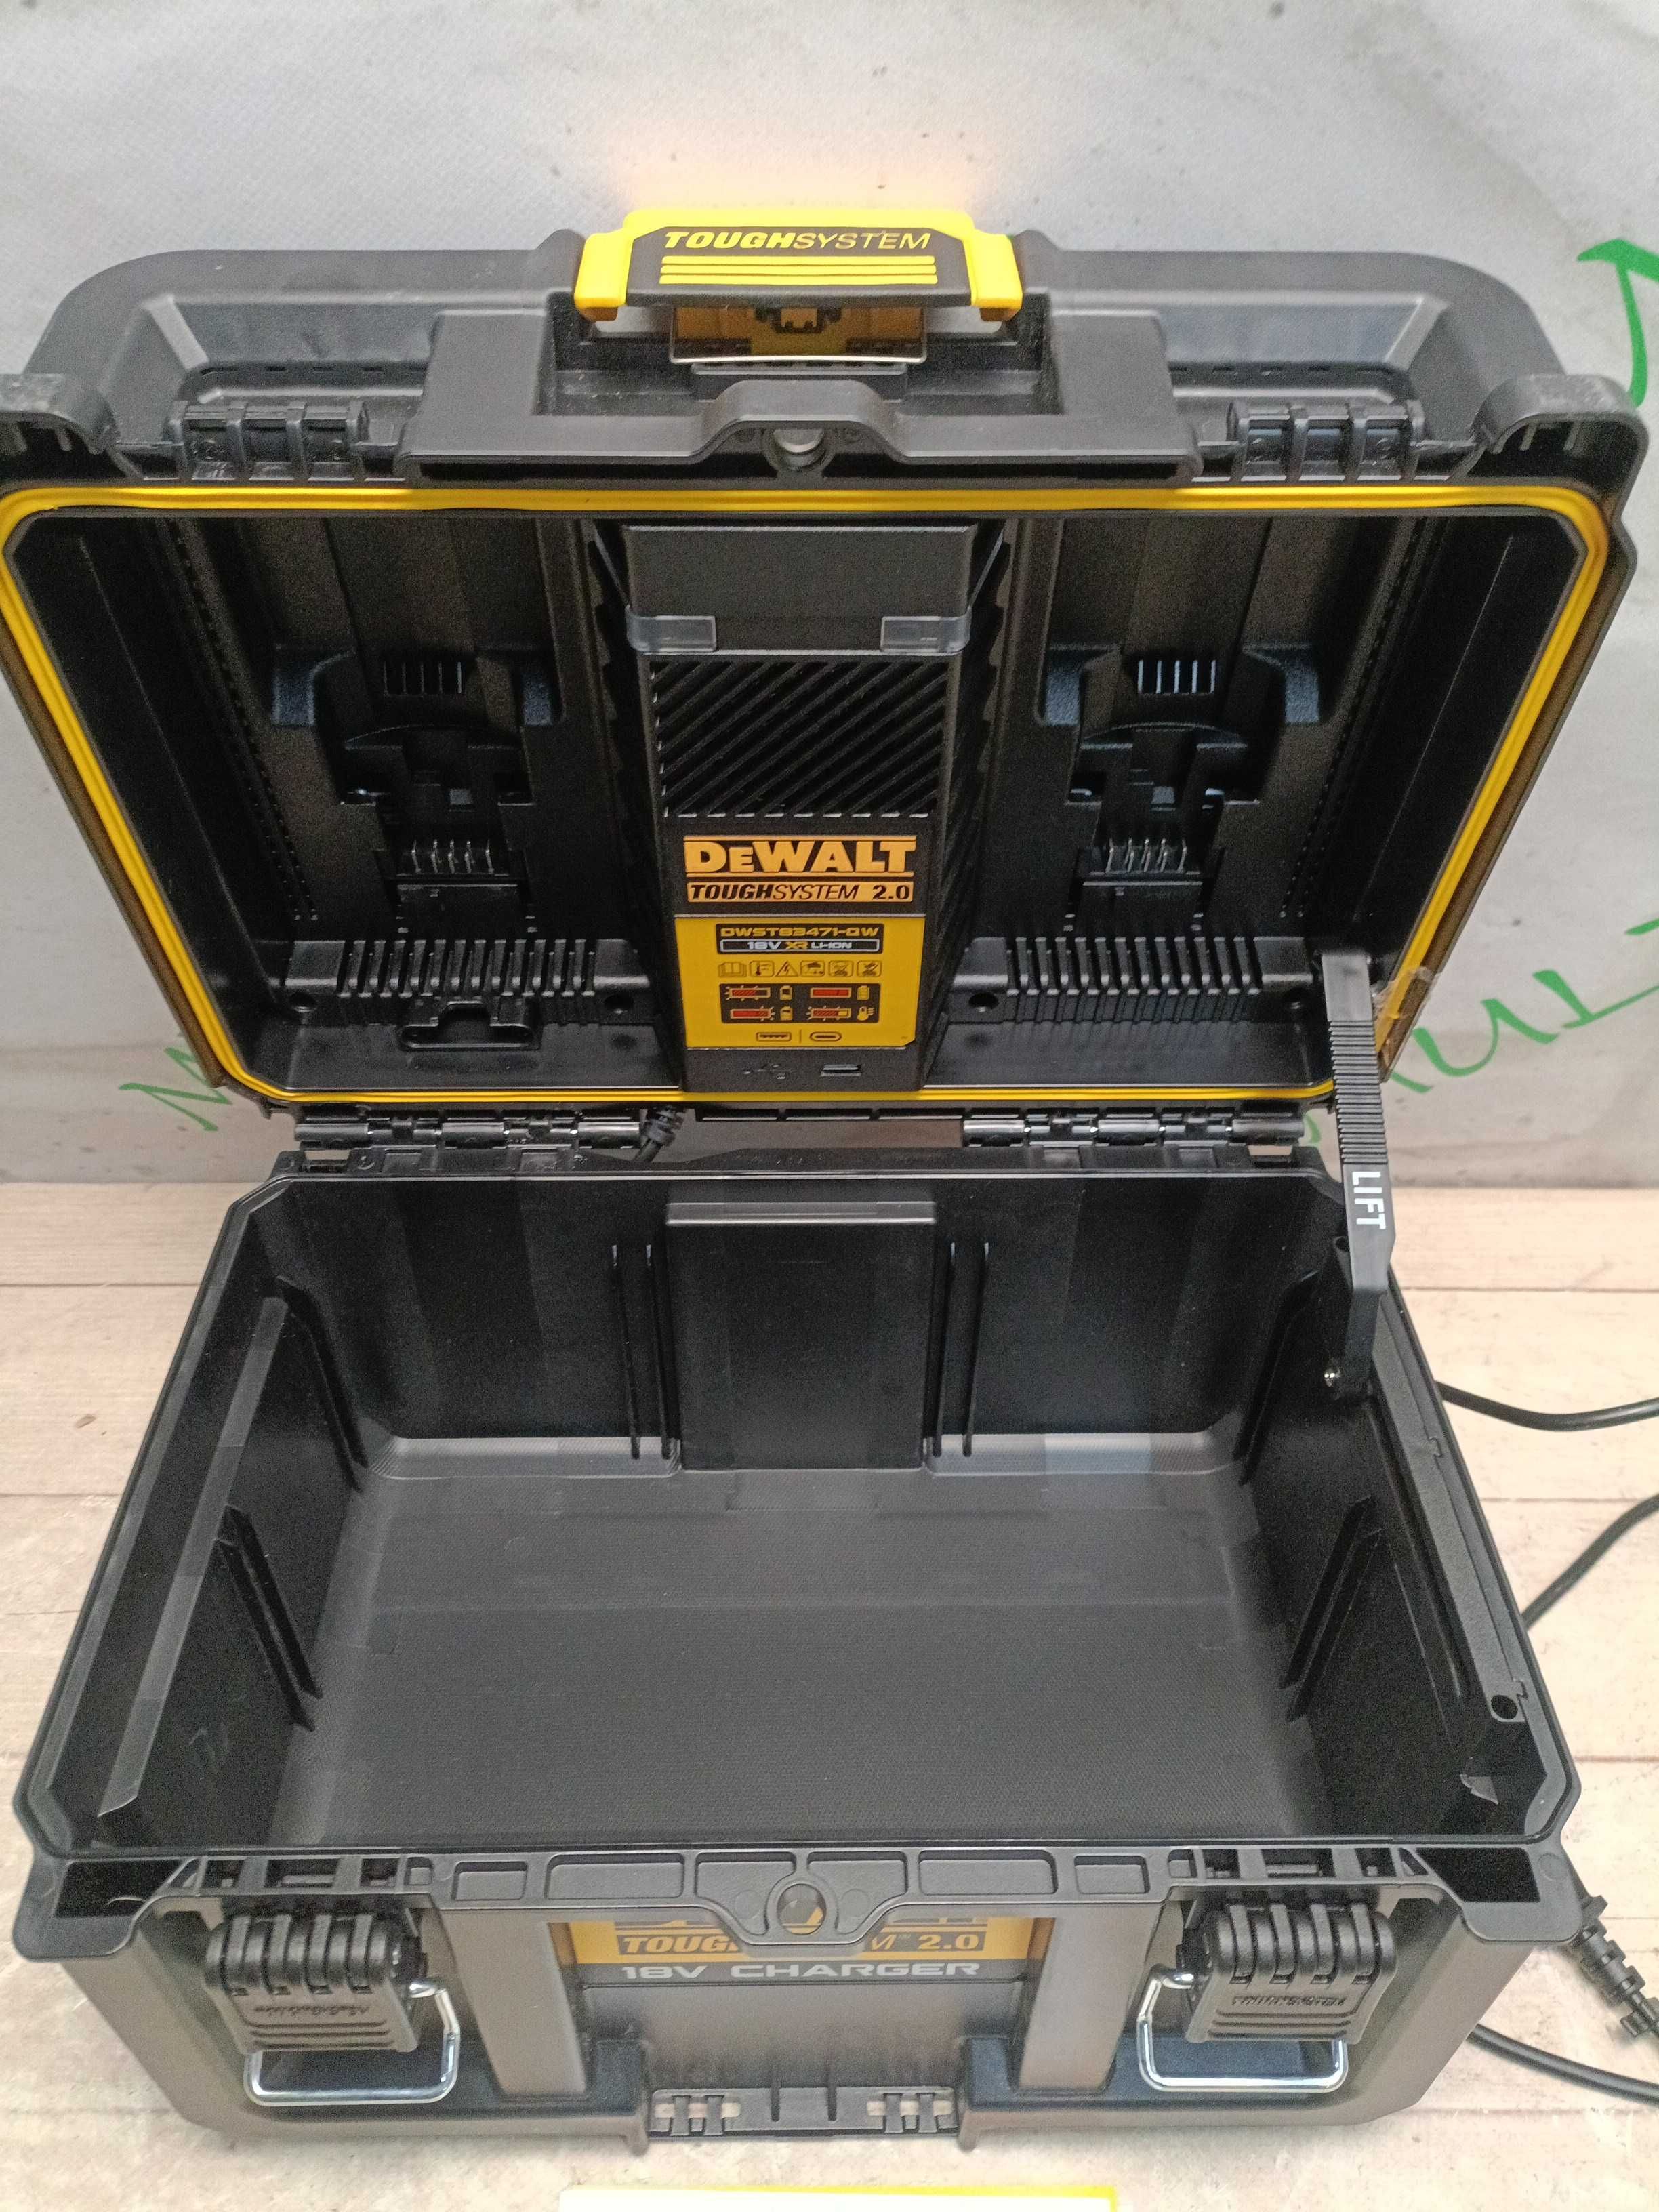 DeWALT DWST83471 зарядний пристрій-BOX для двух аккумуляторов